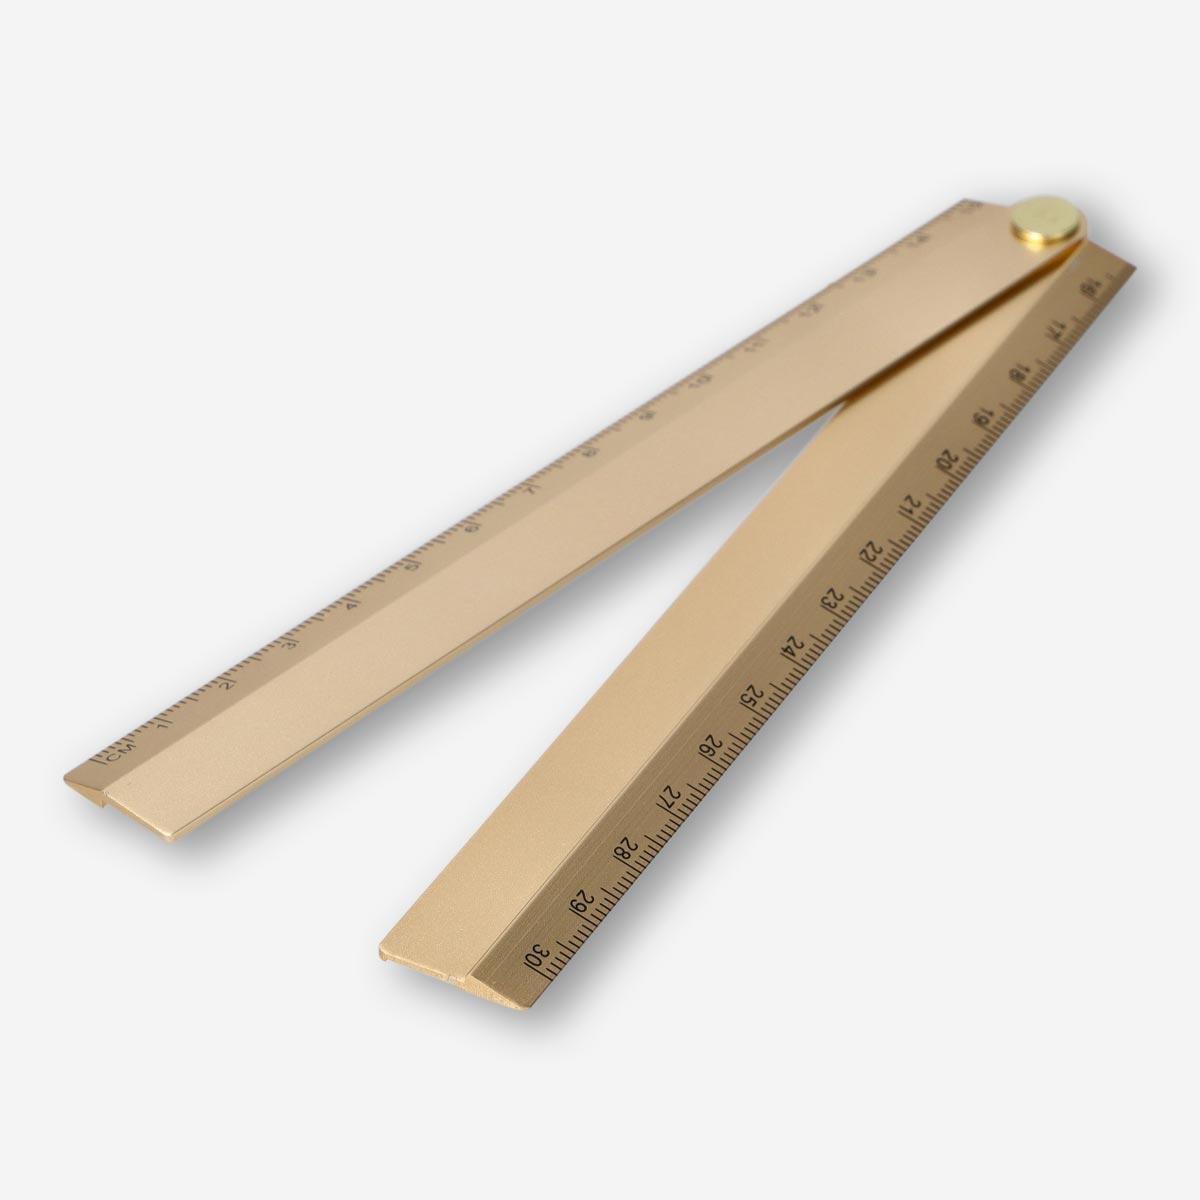 Metal ruler. foldable